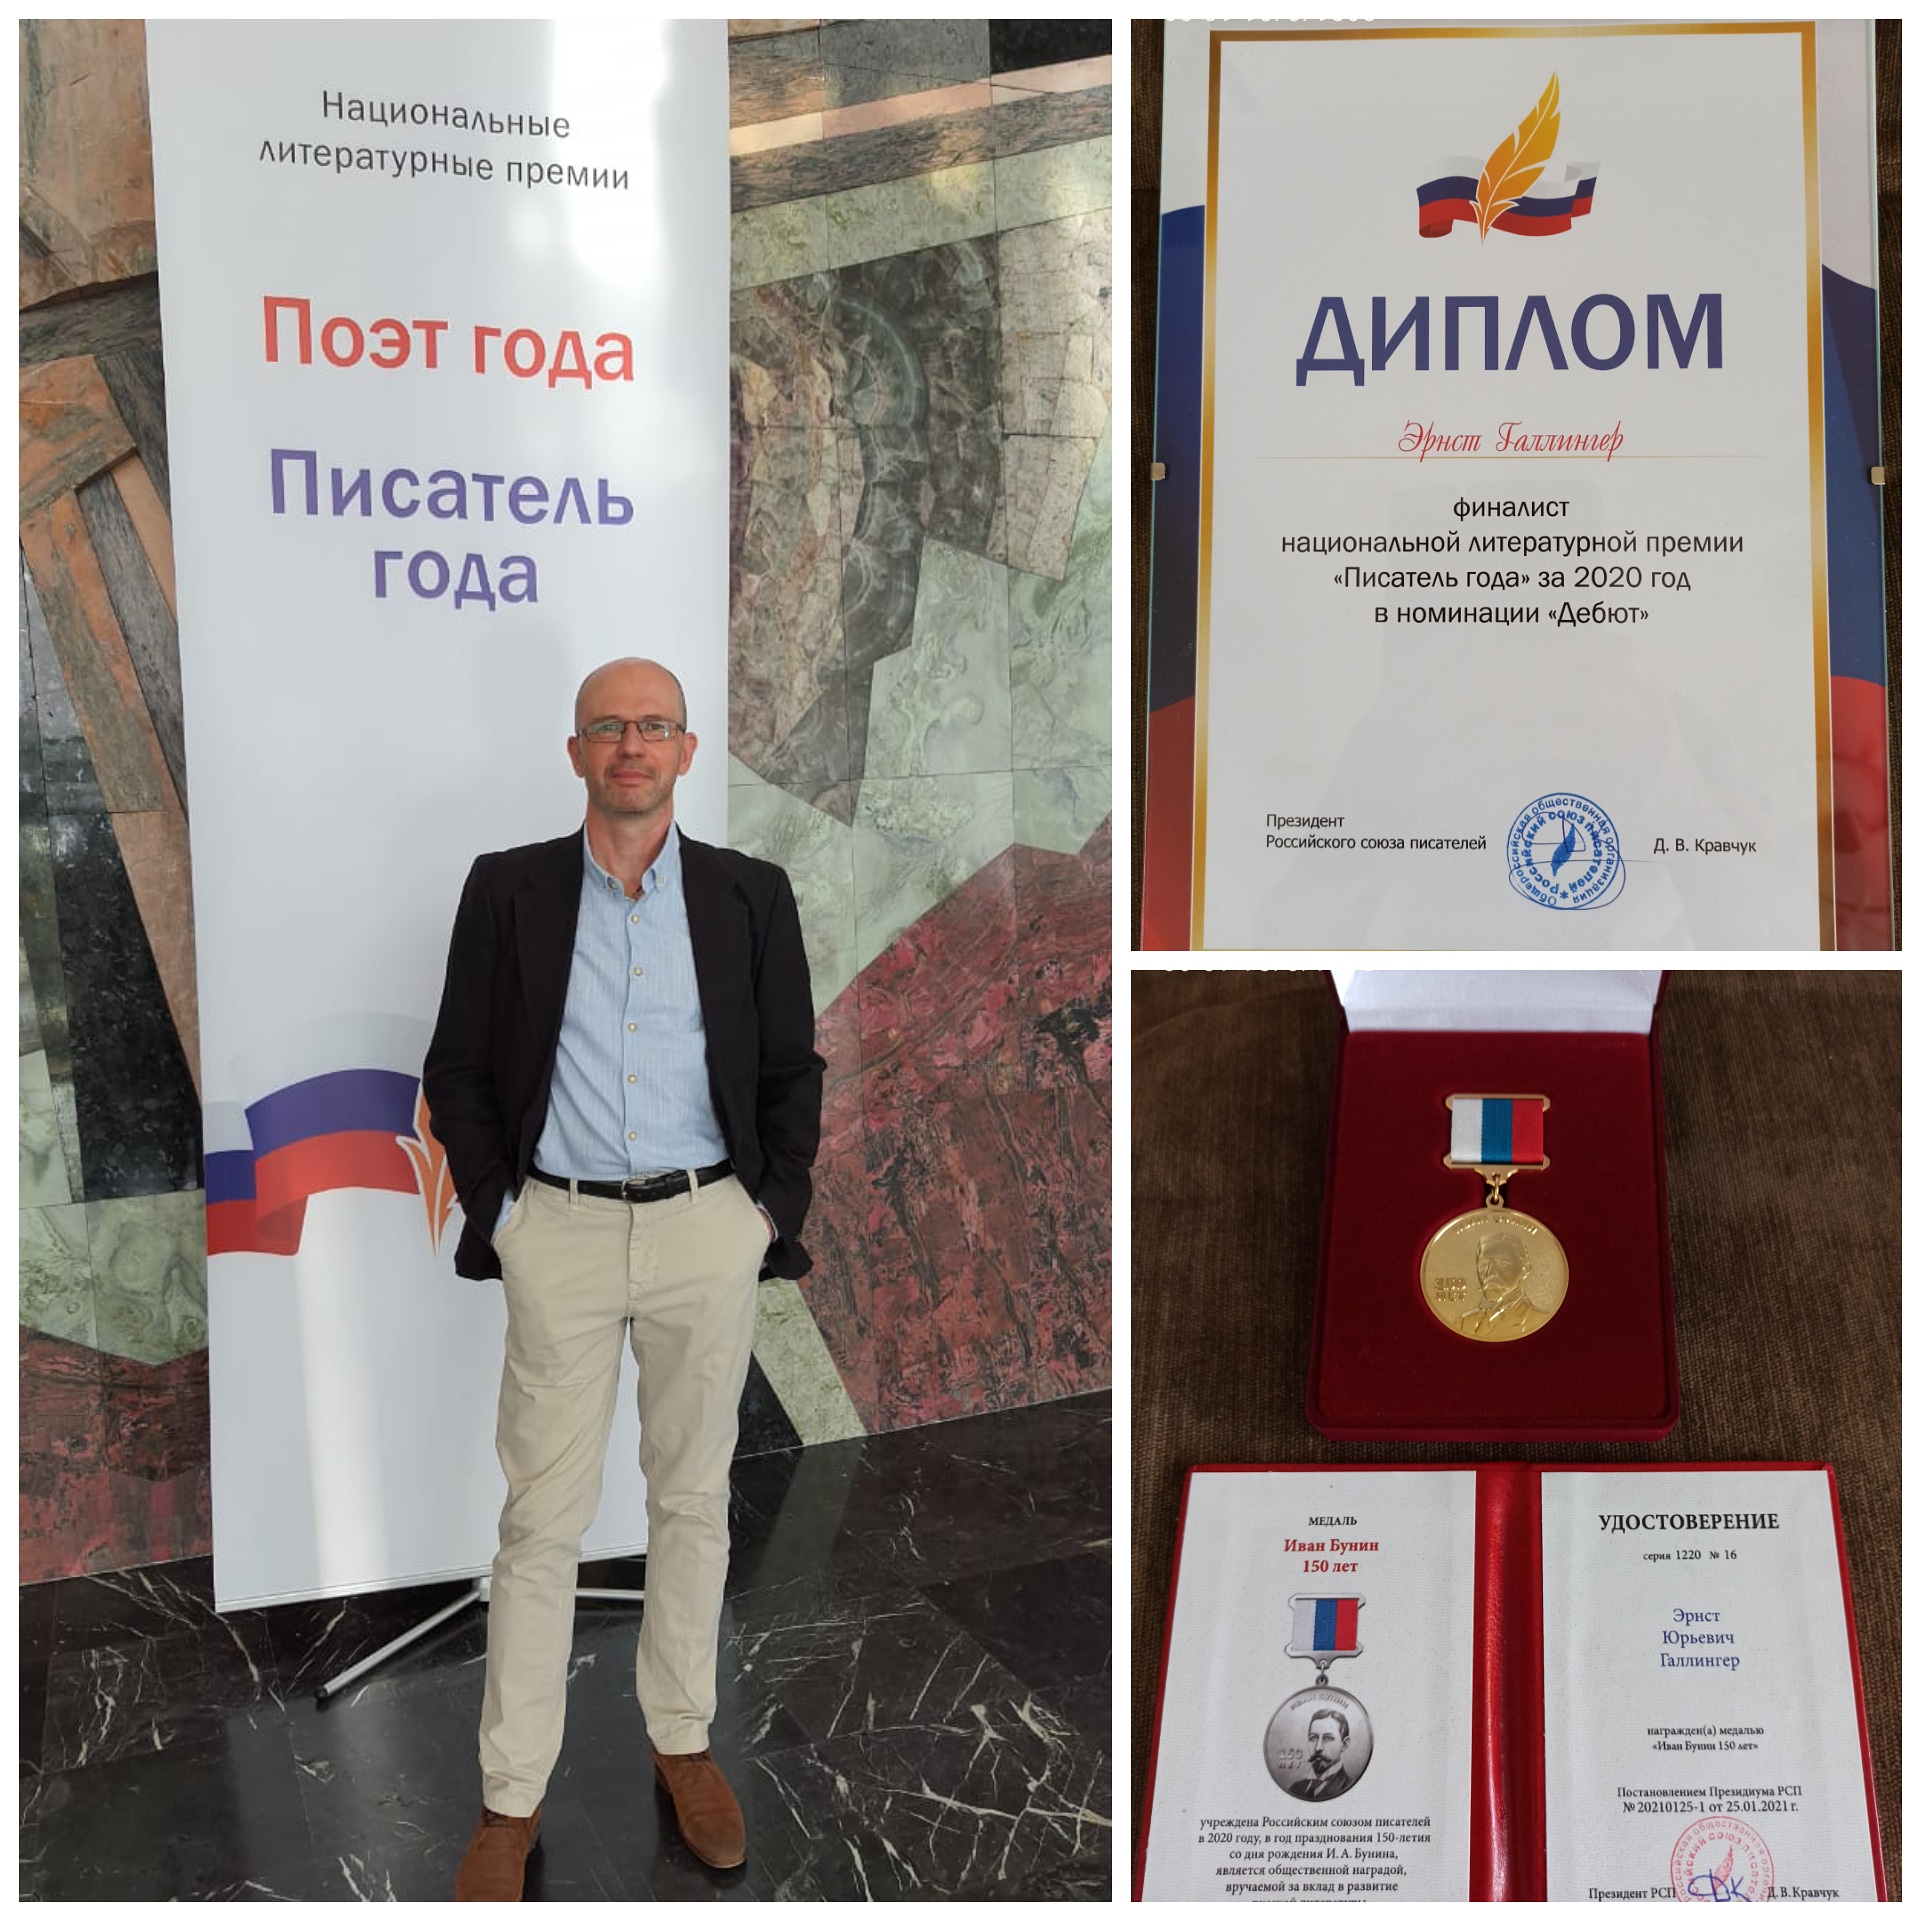 Являюсь финалистом конкурса "Писатель года 2020" и награждён медалью Ивана Бунина